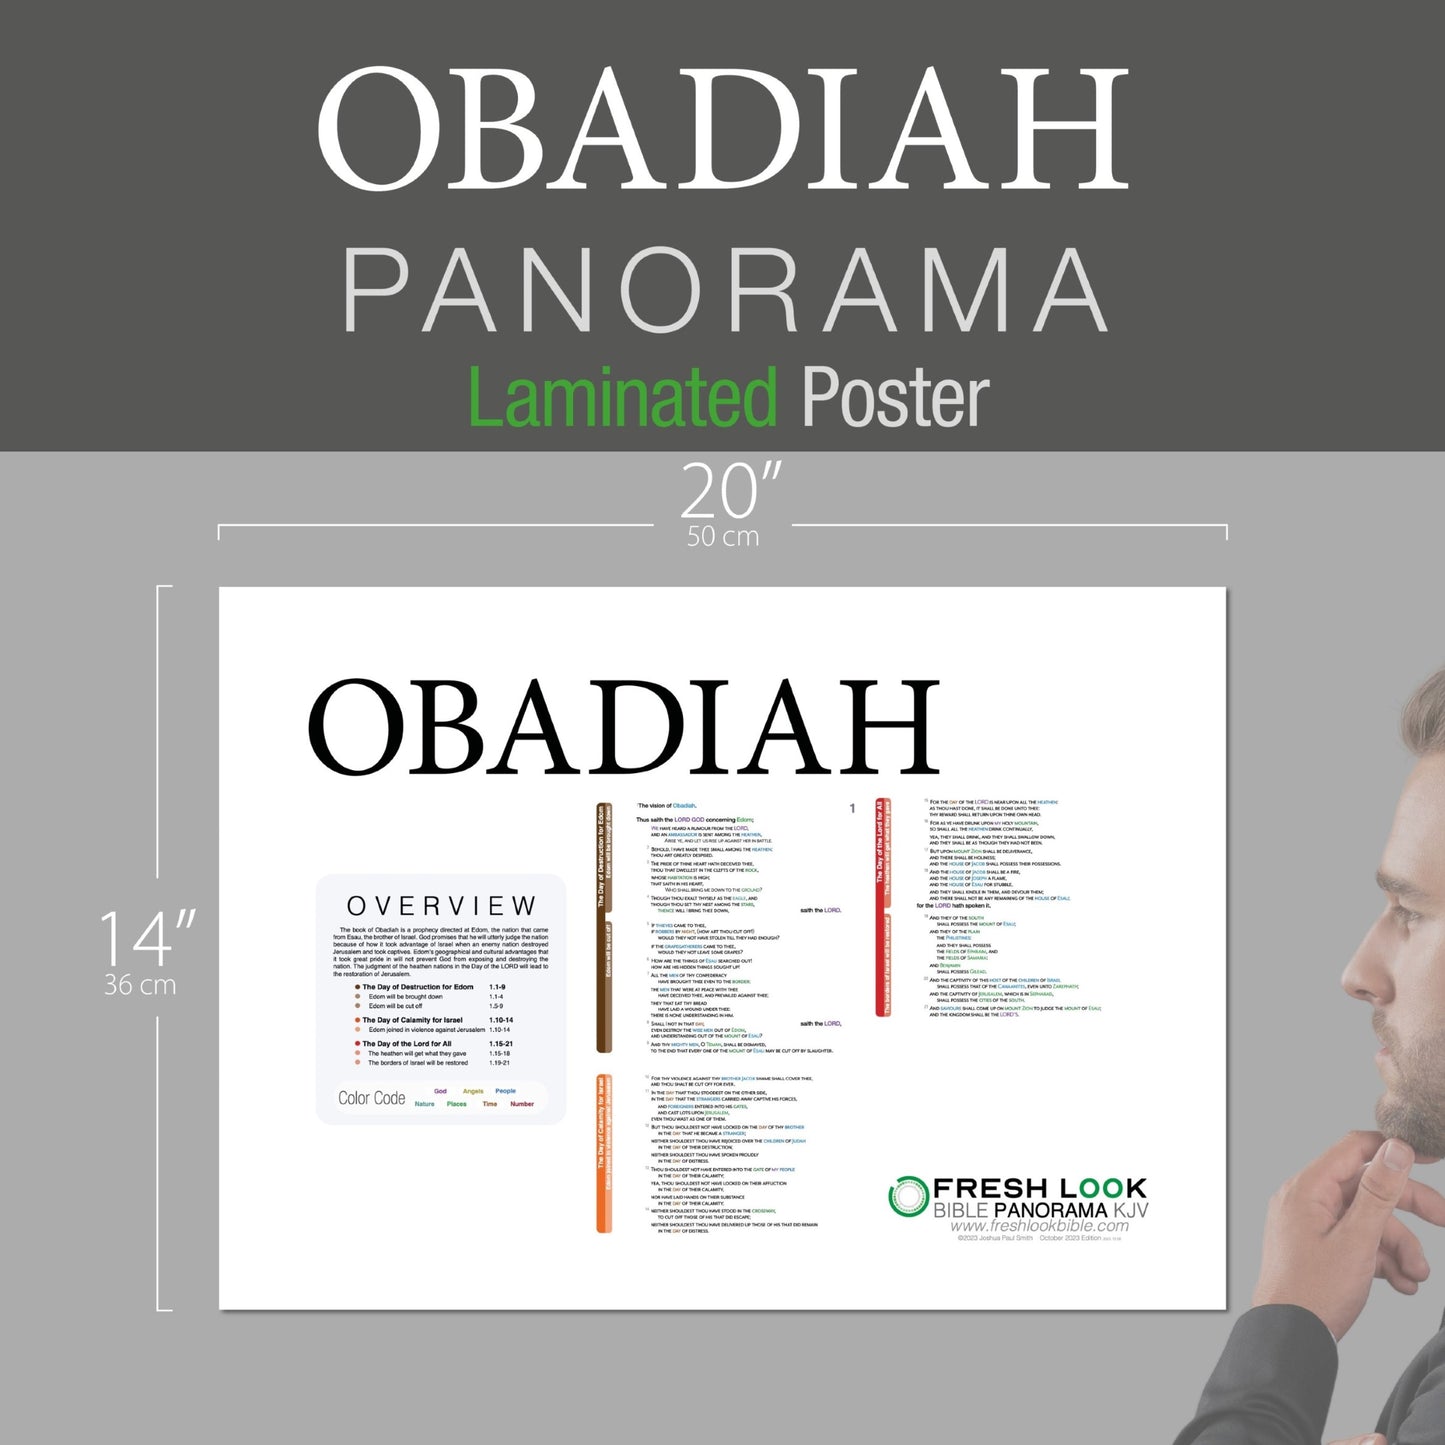 Obadiah Panorama Laminated